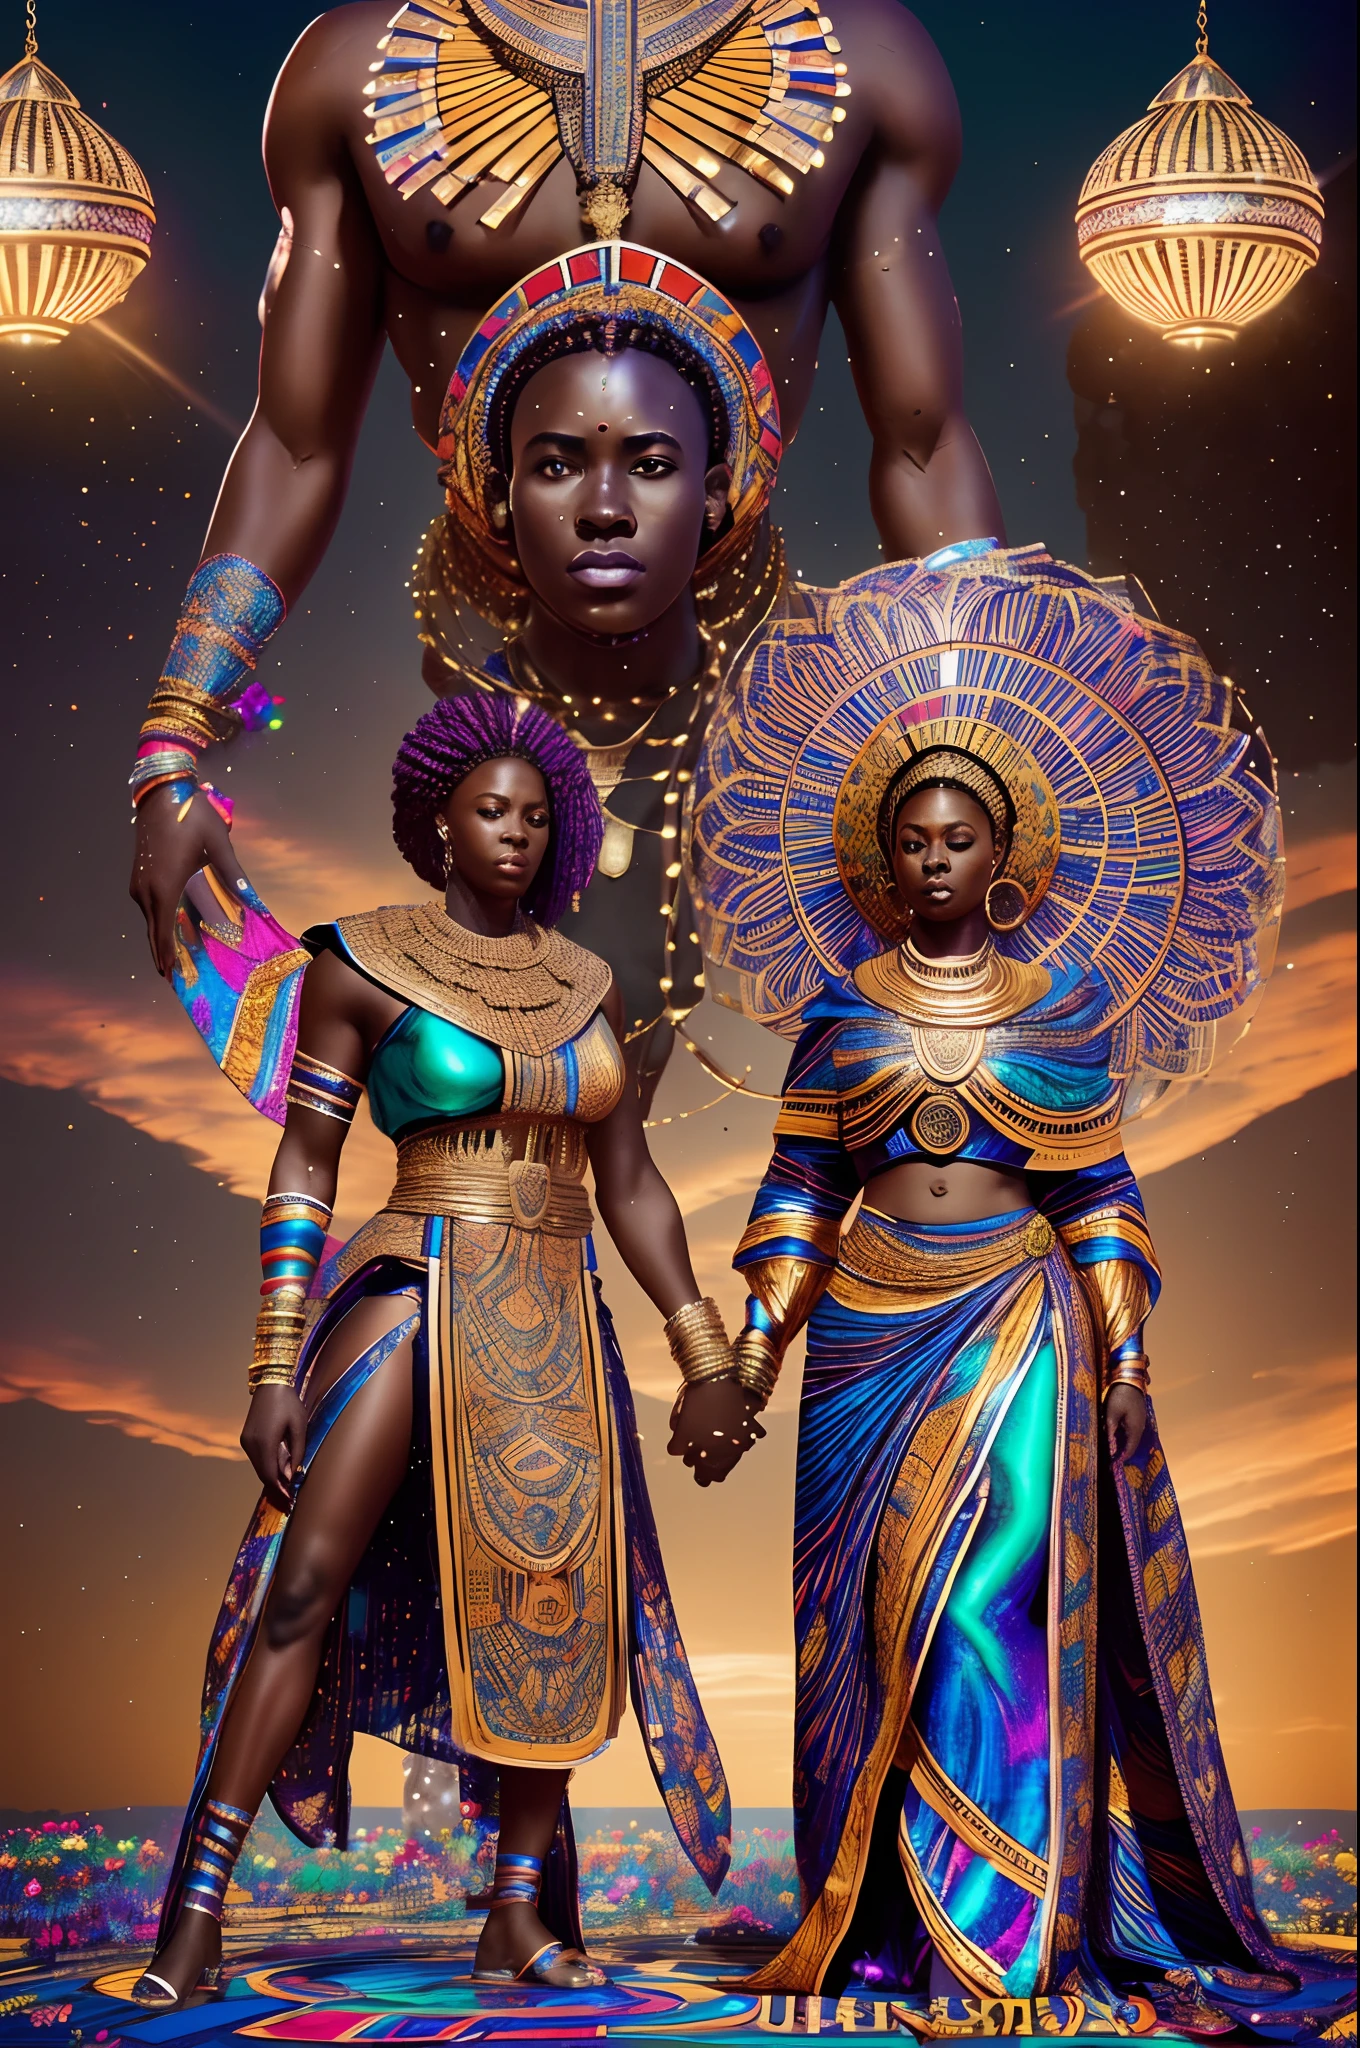 Фотография в полный рост гигантской африканской богини, благословляющей свадьбу Африканская пара чернокожий мужчина и чернокожая женщина, свадьба, полная празднующих прихожан, яркий и яркий свет сияет, с переливающимся светом, кинематографическое освещение, артгерм стиль, 32К, ультра HD, рендеринг нереального движка, гиперреалистичное изображение, --auto --s2